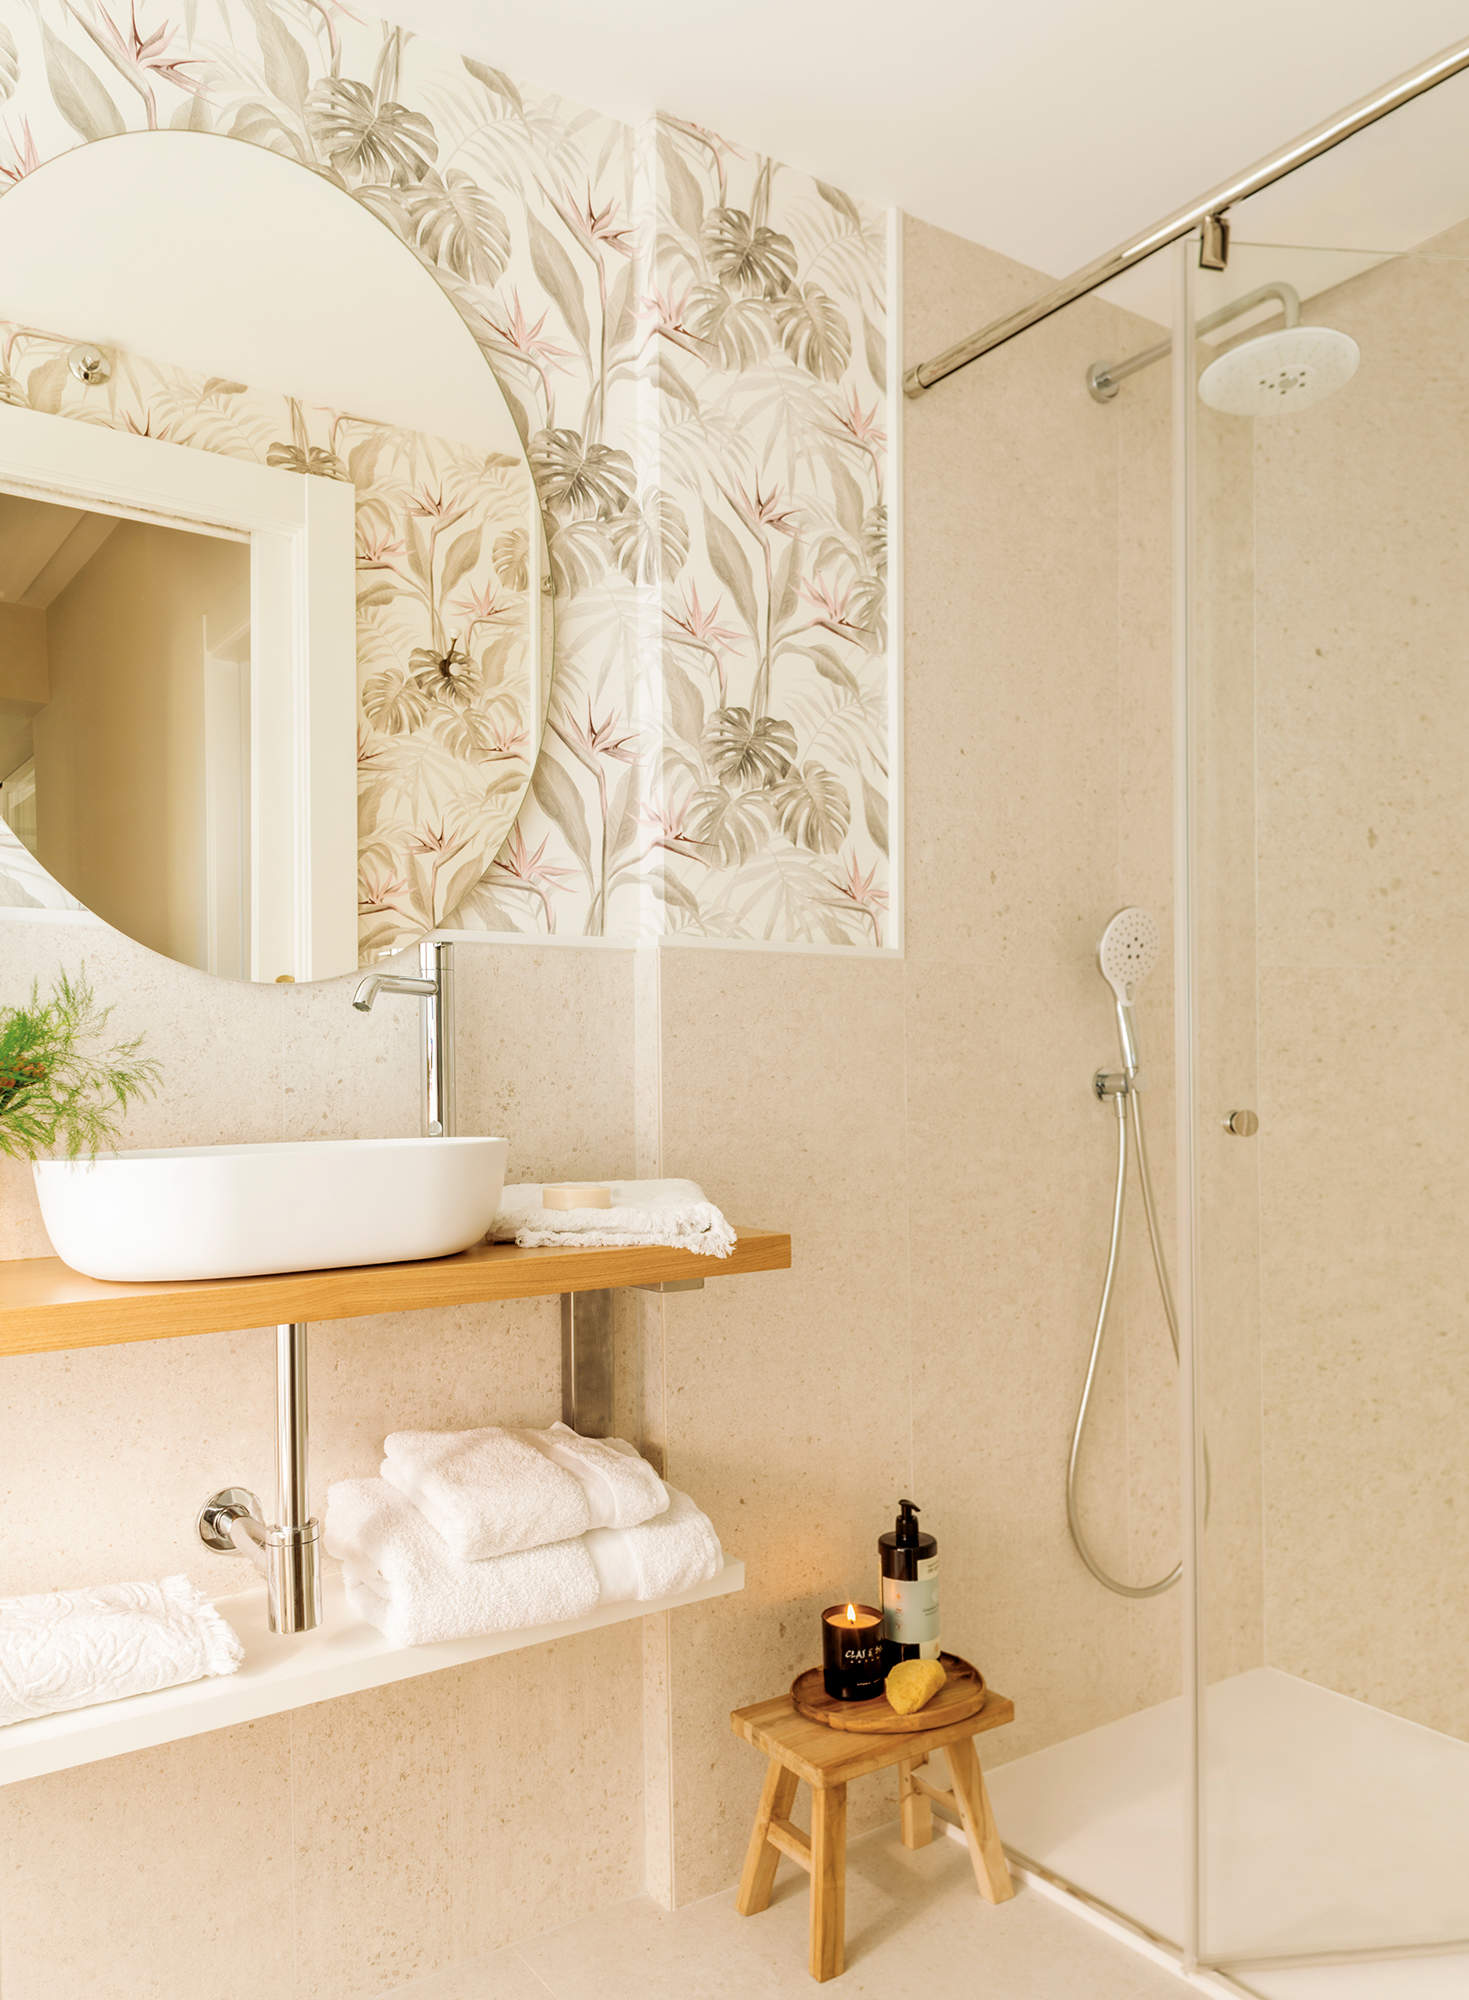 Baño con paredes revestidas de papel y azulejo